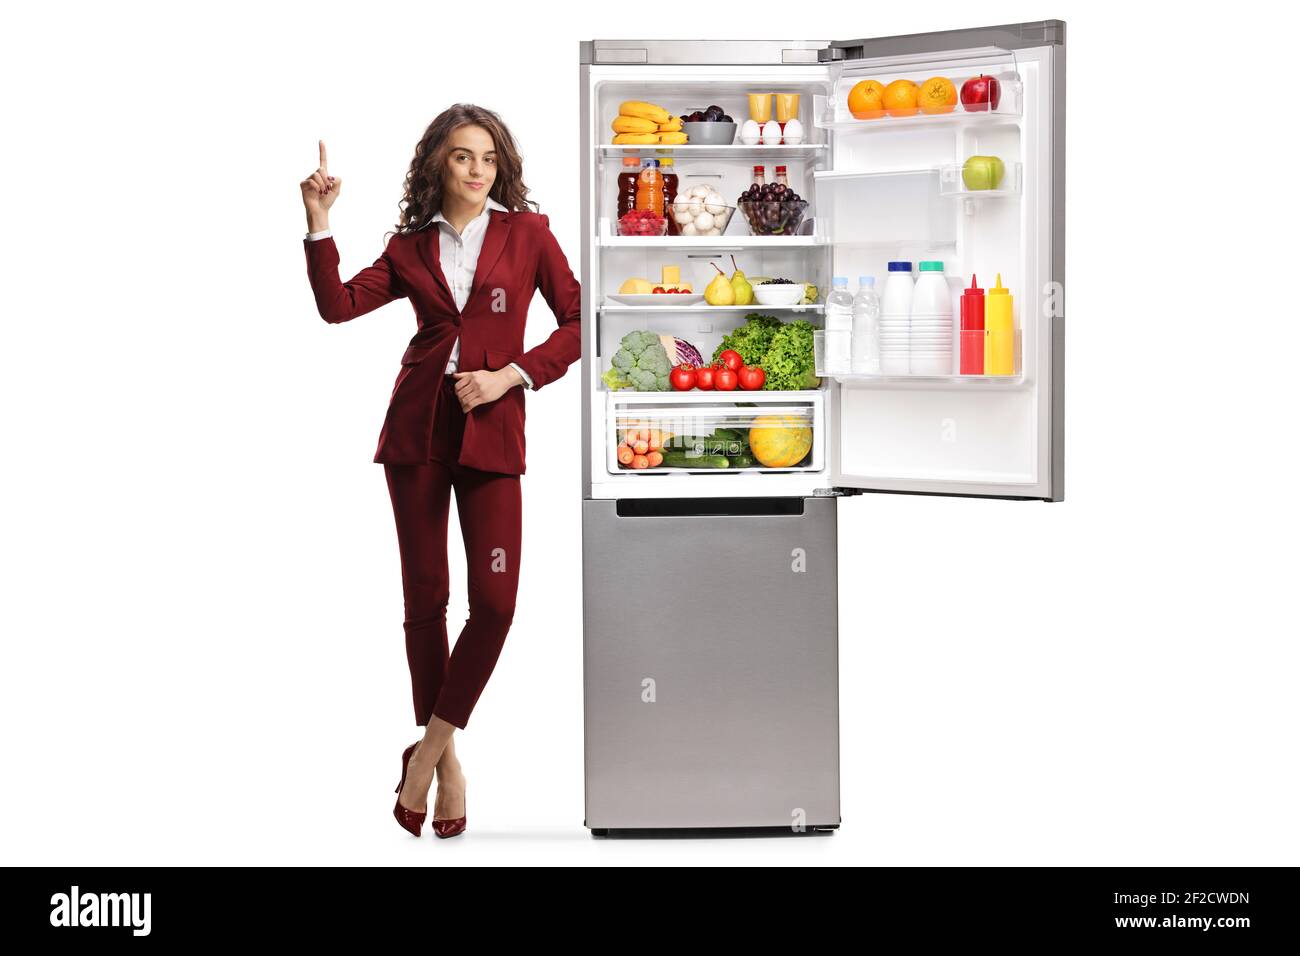 Ganzkörperportrait einer jungen Frau, die sich auf eine lehnt Öffnen Sie den Kühlschrank und zeigen Sie isoliert auf weißem Hintergrund Stockfoto